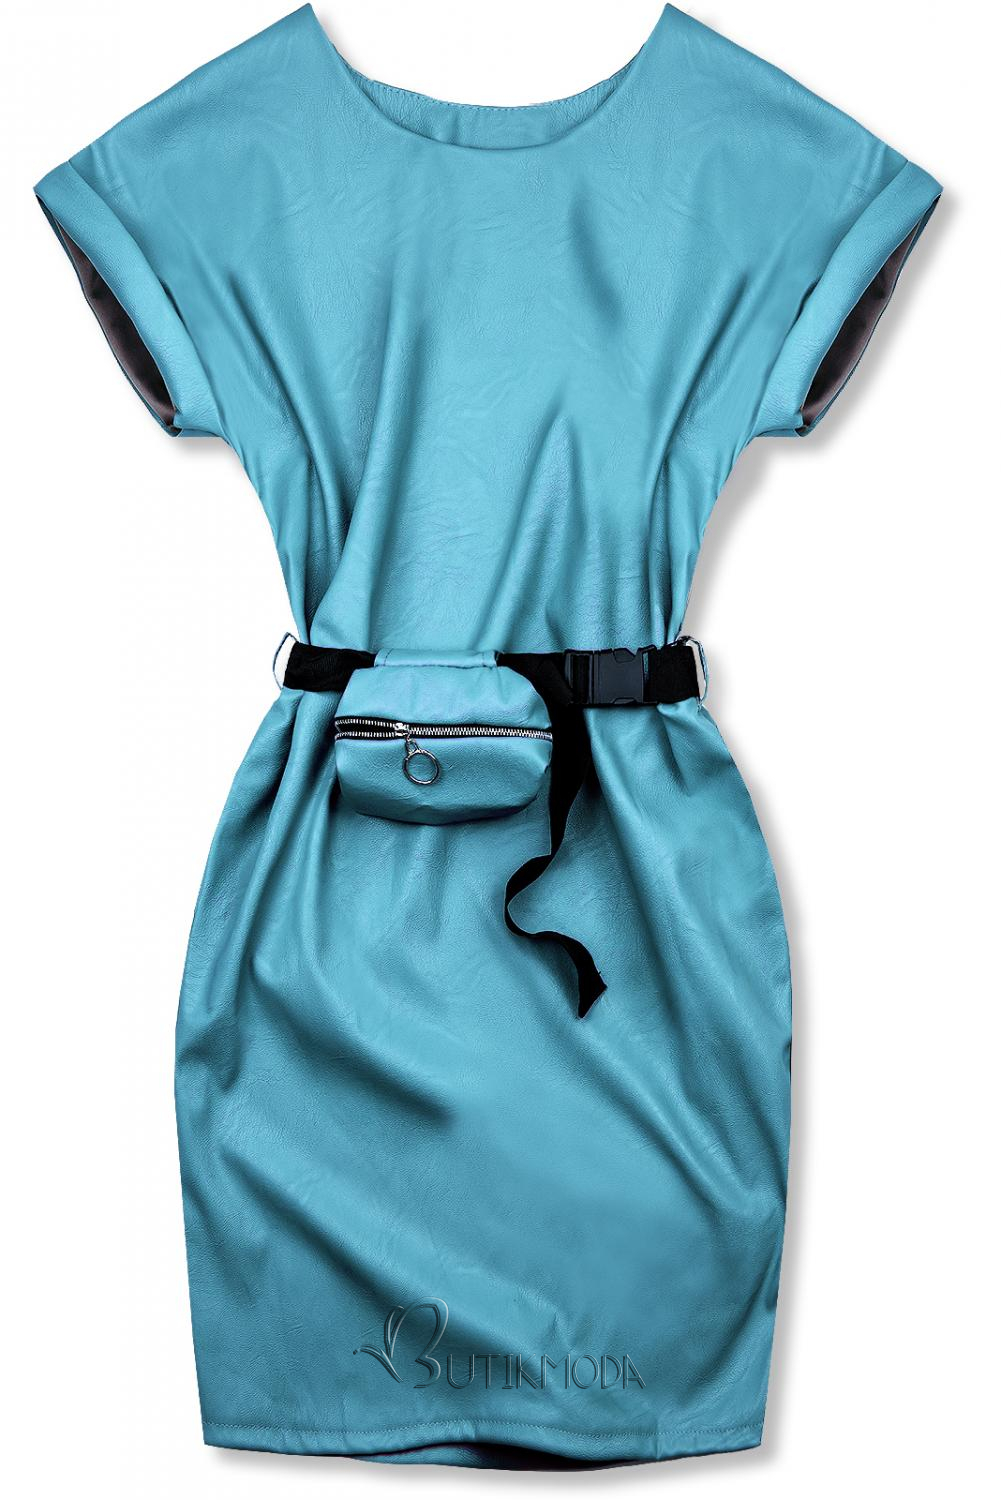 Kék színű műbőr hatású ruha